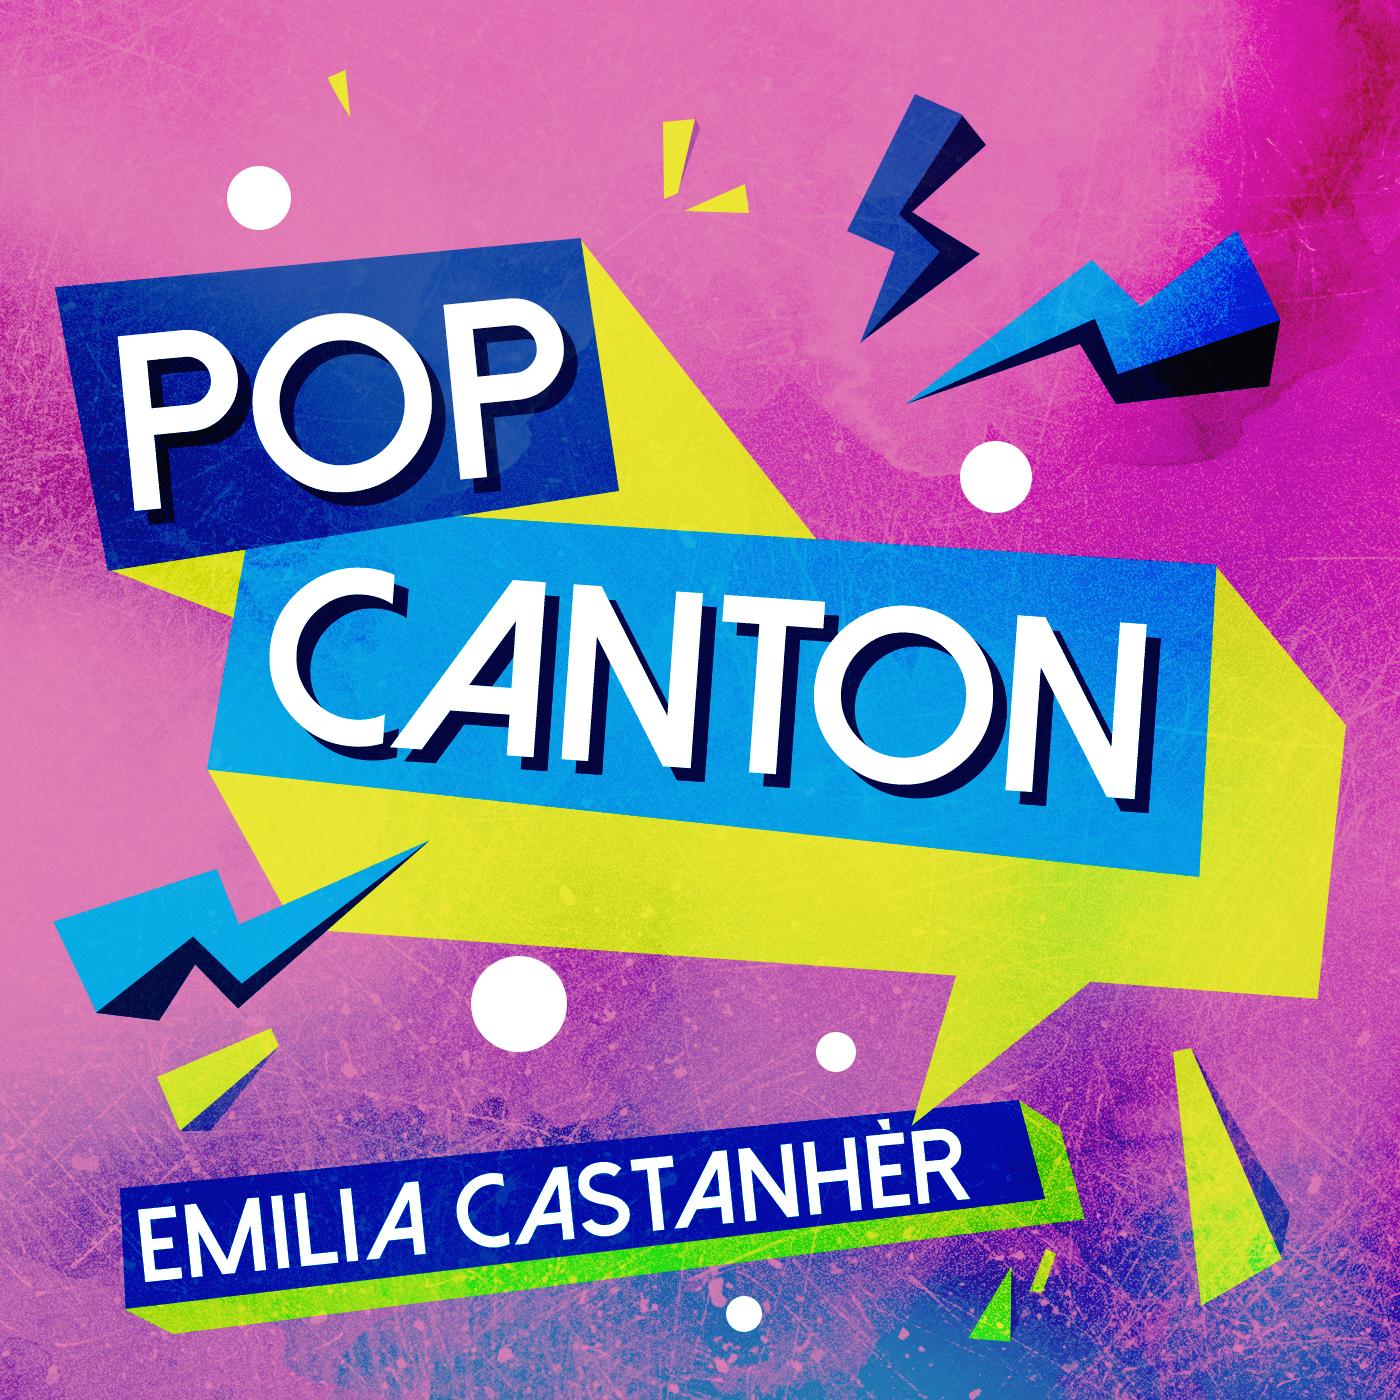 Pop Canton #01 amb Emilia Castanhèr